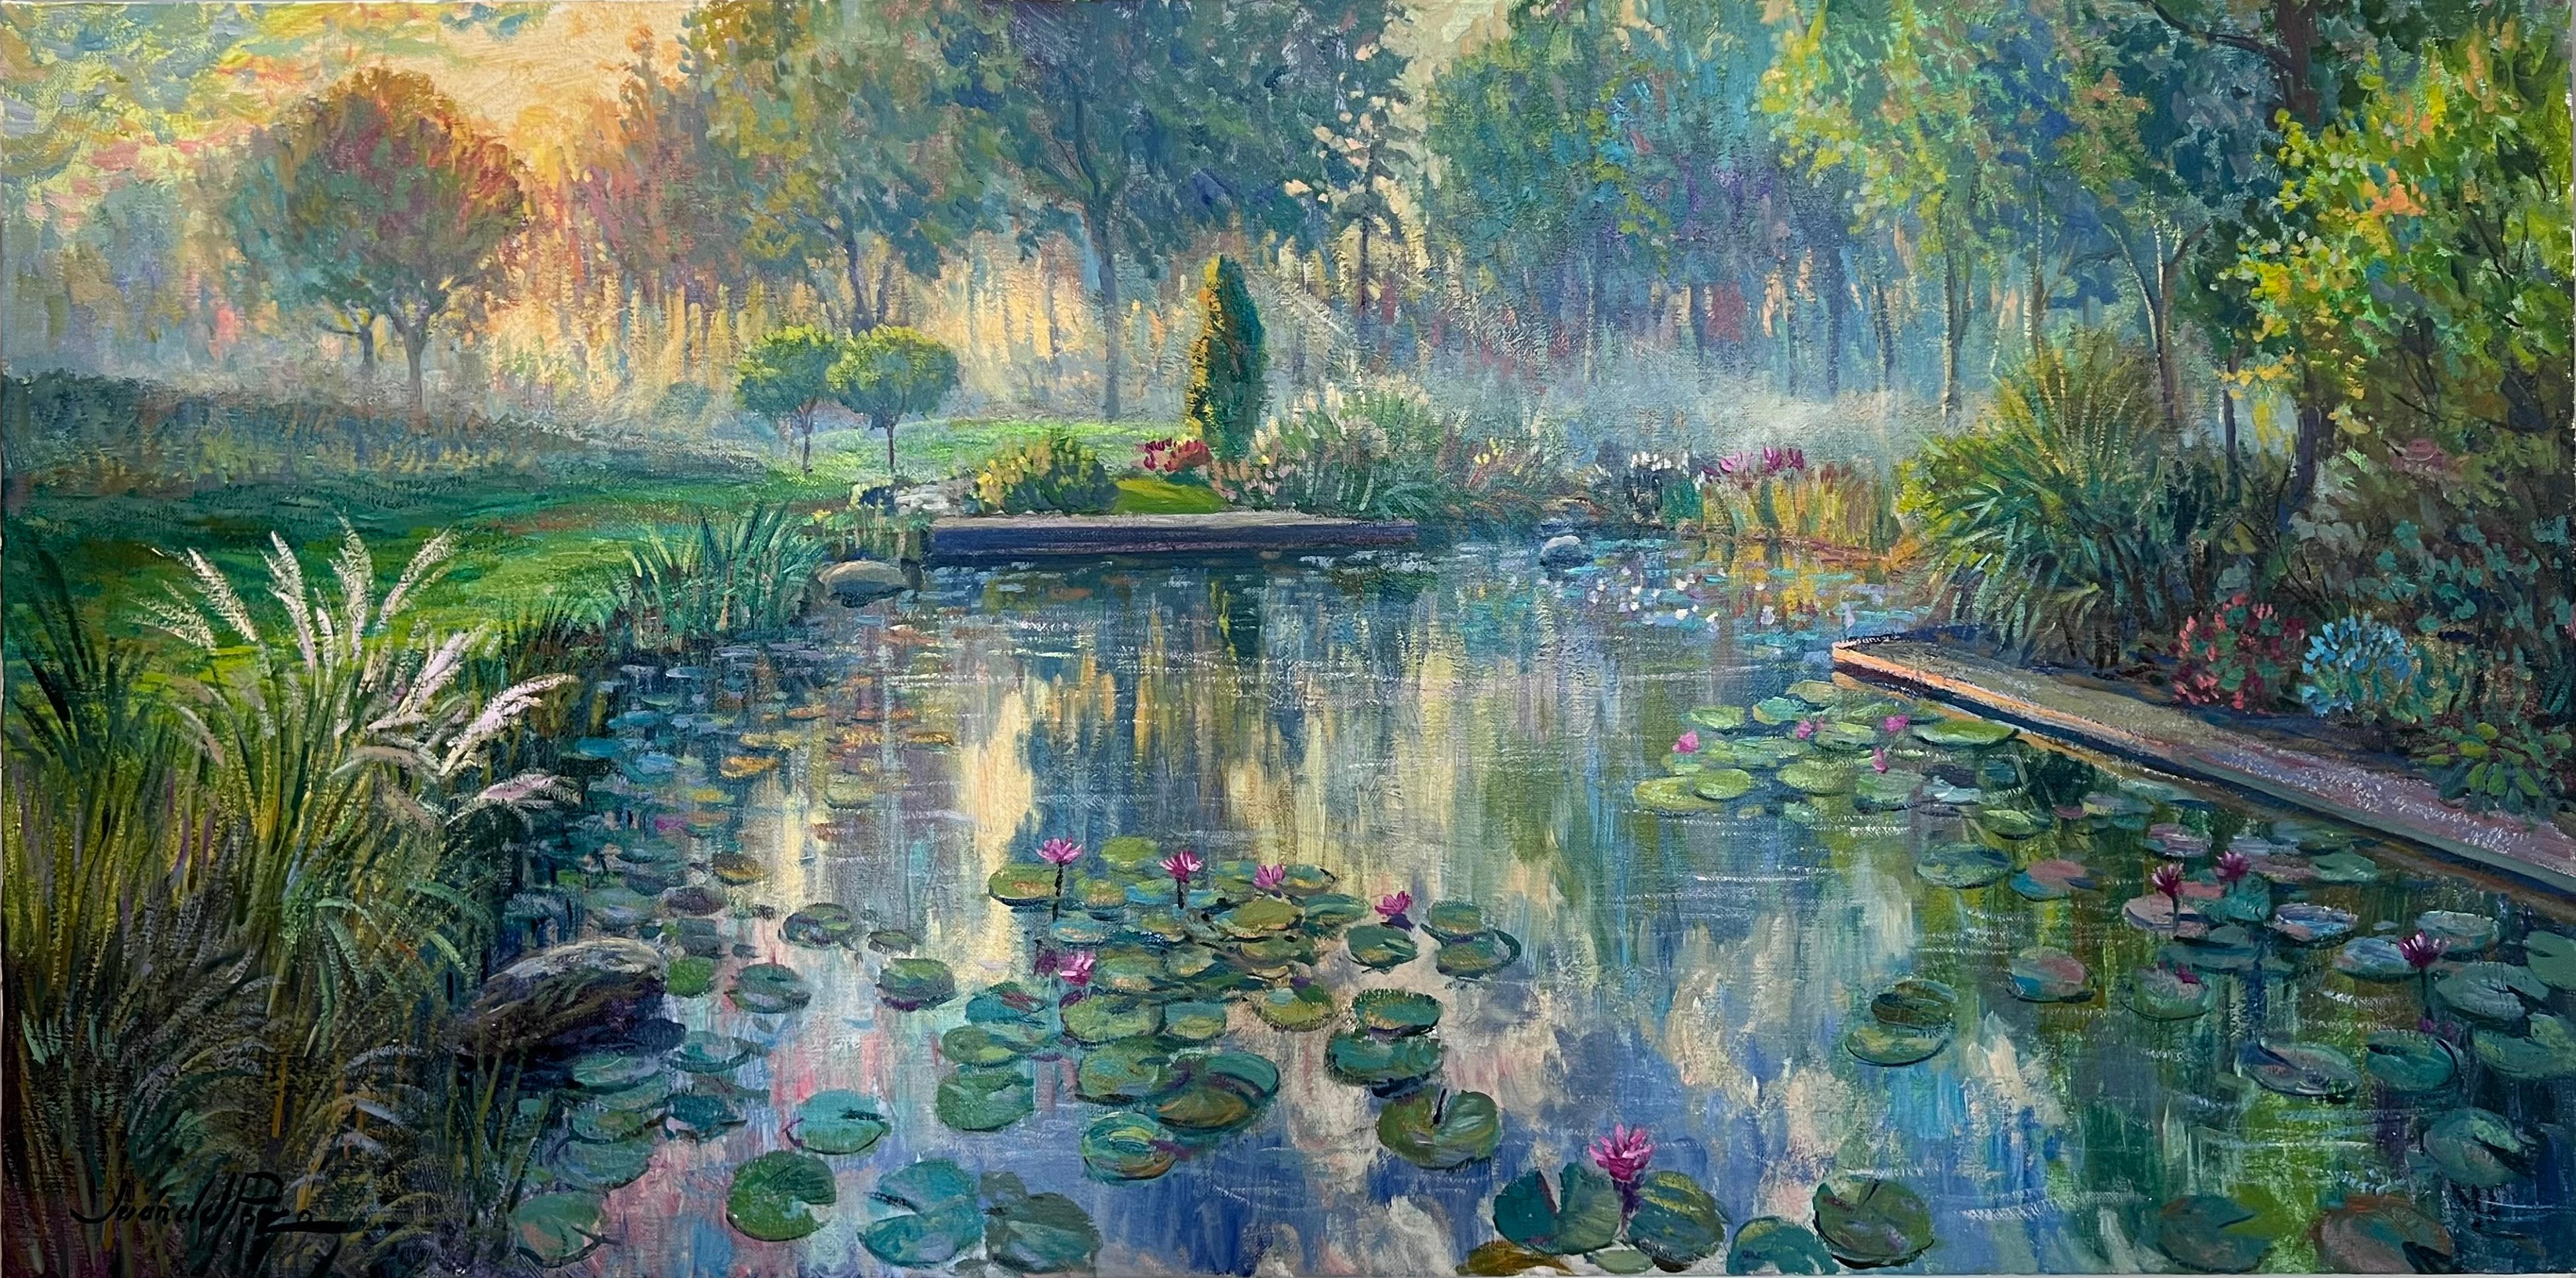 Juan del Pozo Landscape Painting - Mystic Pond - original impressionism landscape oil painting - contemporary art